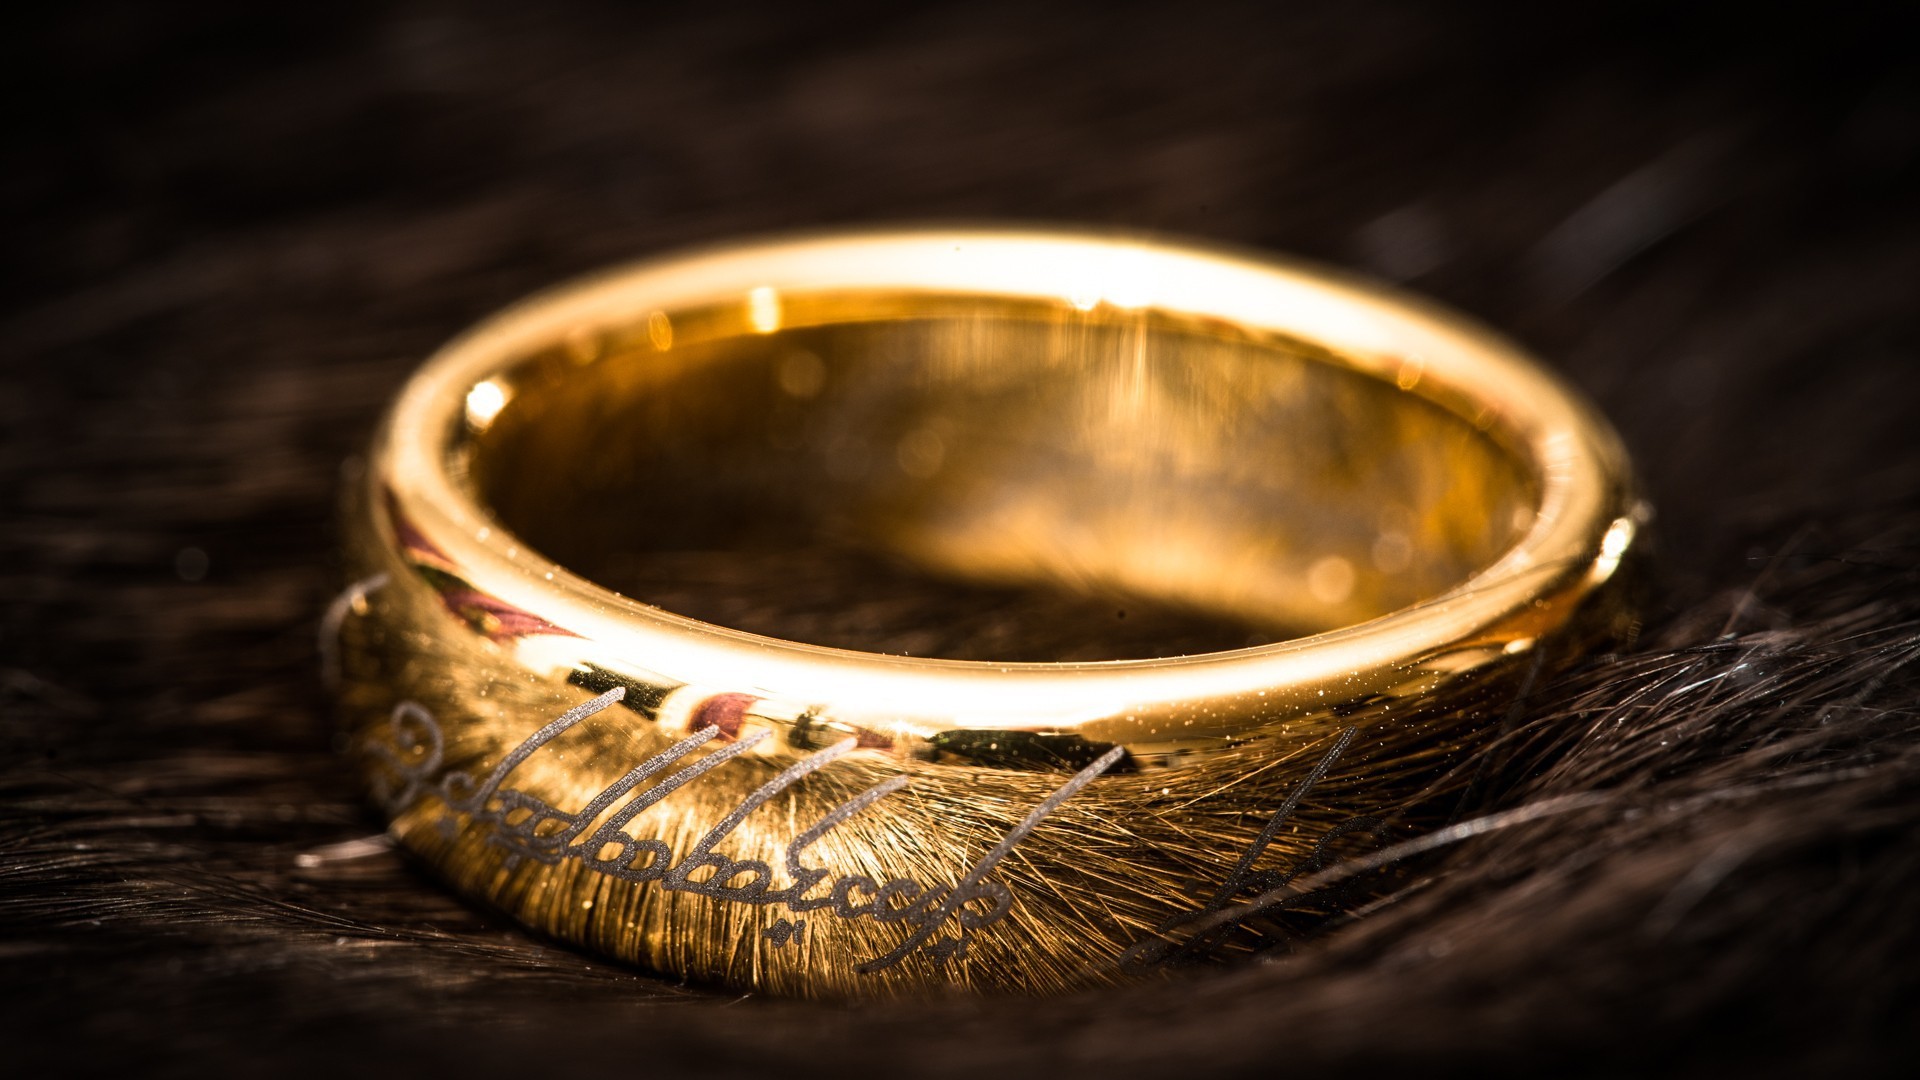 il signore degli anelli wallpaper hd,squillare,fede,metallo,oro,fornitura cerimonia di nozze